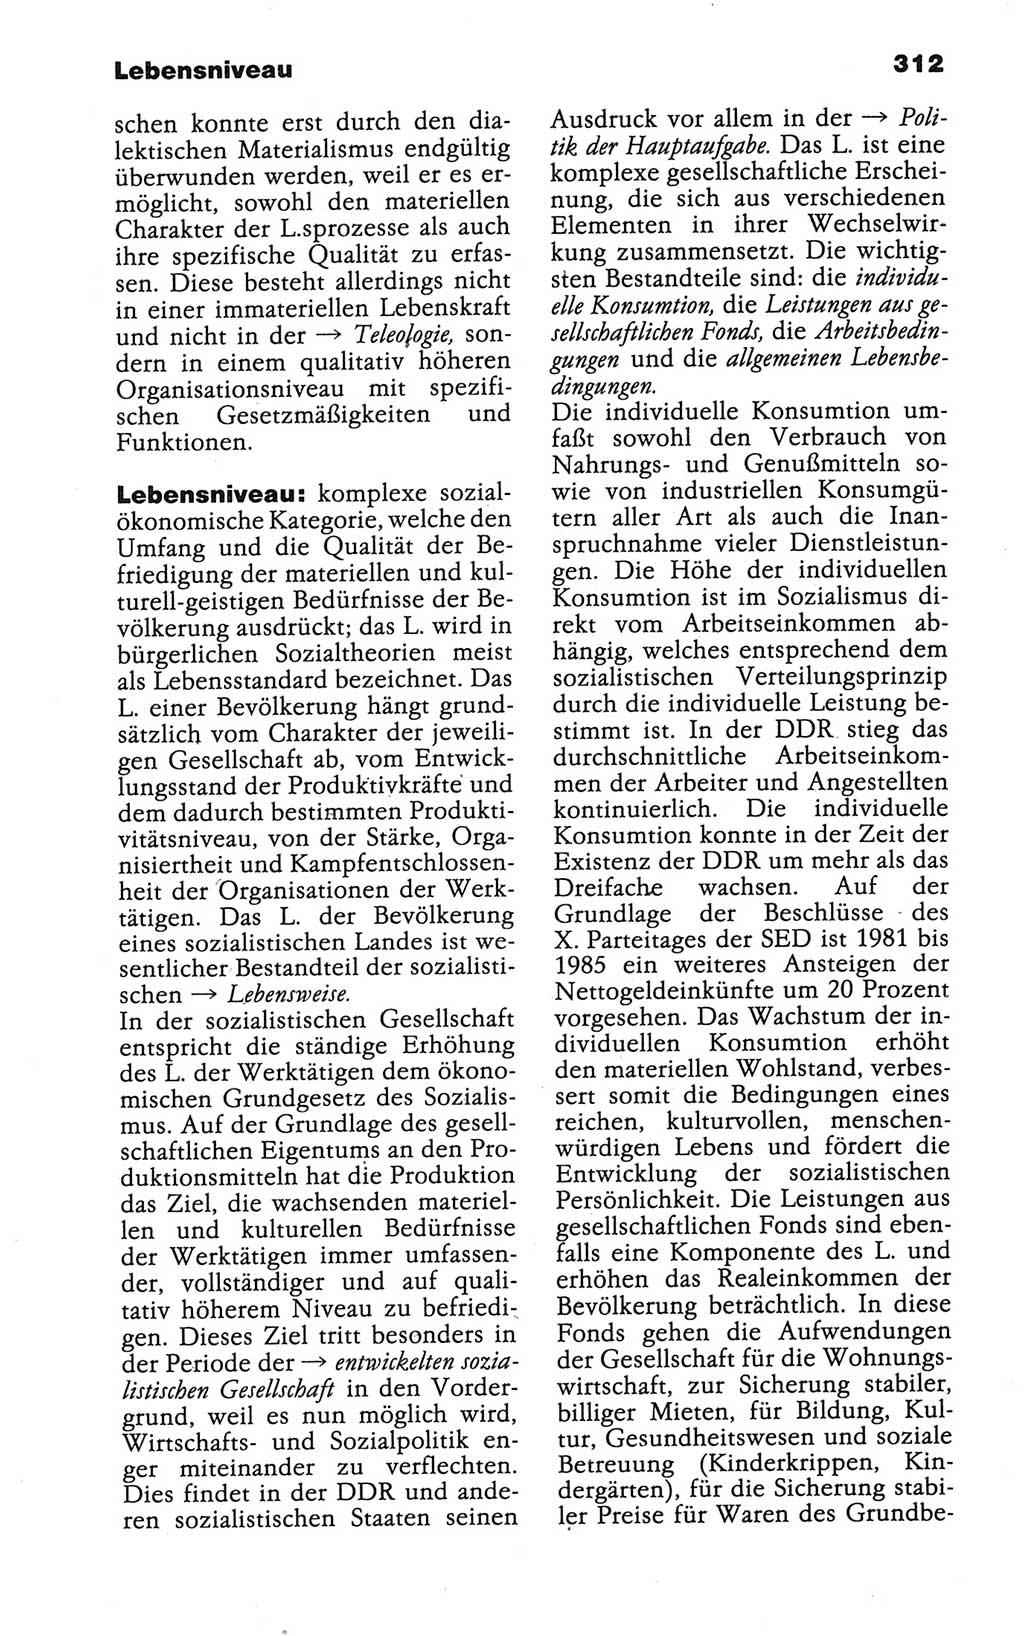 Wörterbuch der marxistisch-leninistischen Philosophie [Deutsche Demokratische Republik (DDR)] 1986, Seite 312 (Wb. ML Phil. DDR 1986, S. 312)